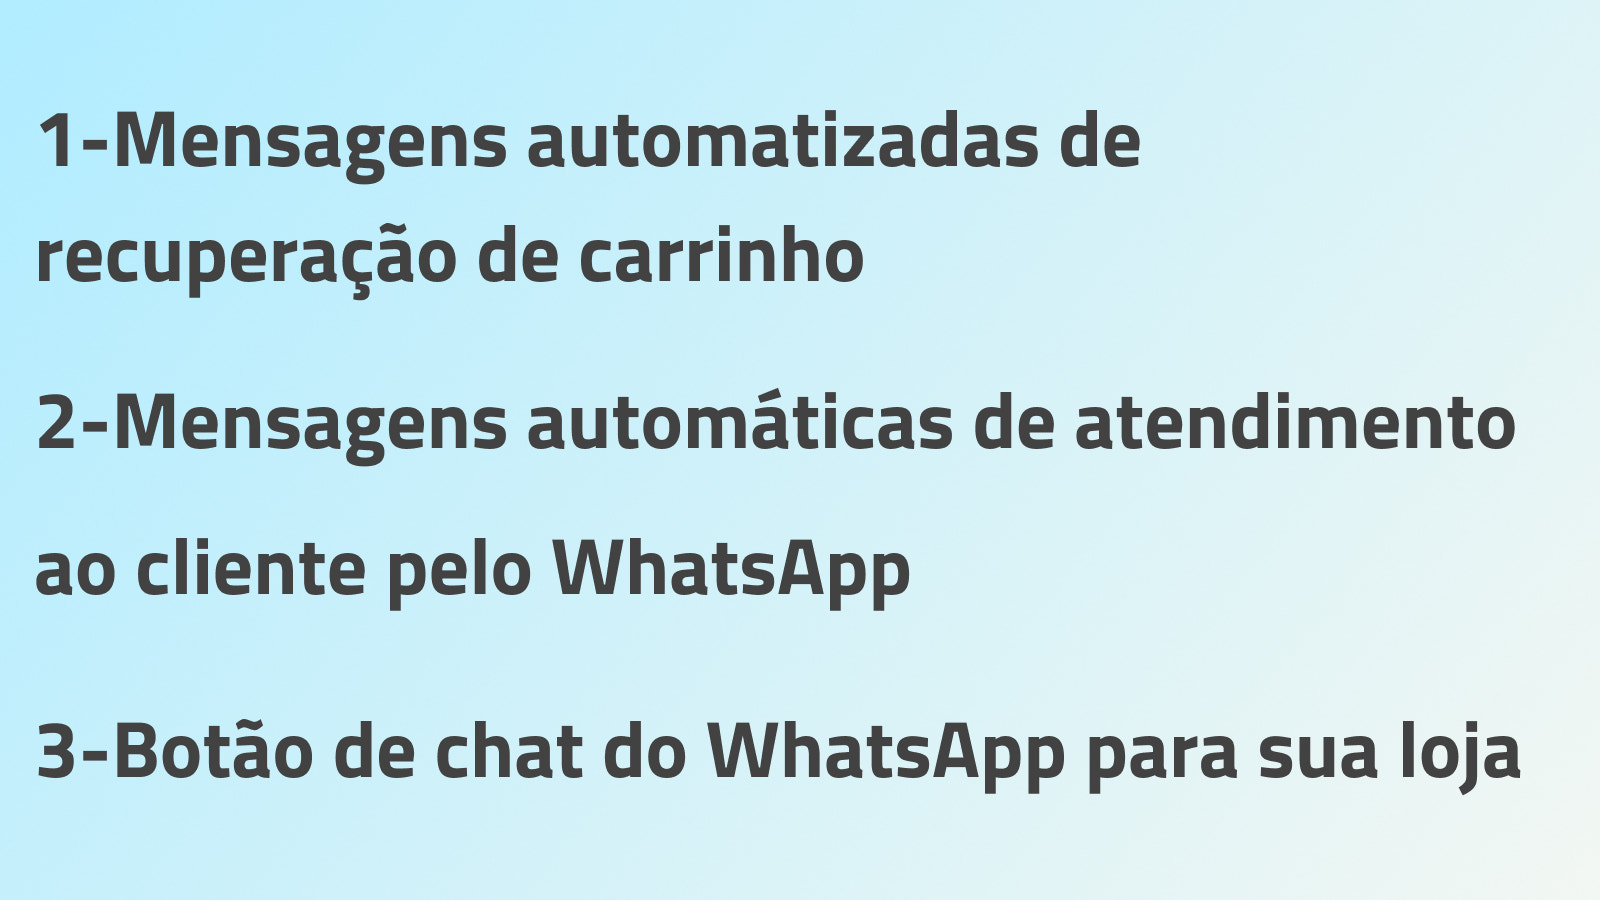 WhatsApp marketing + Chat botao